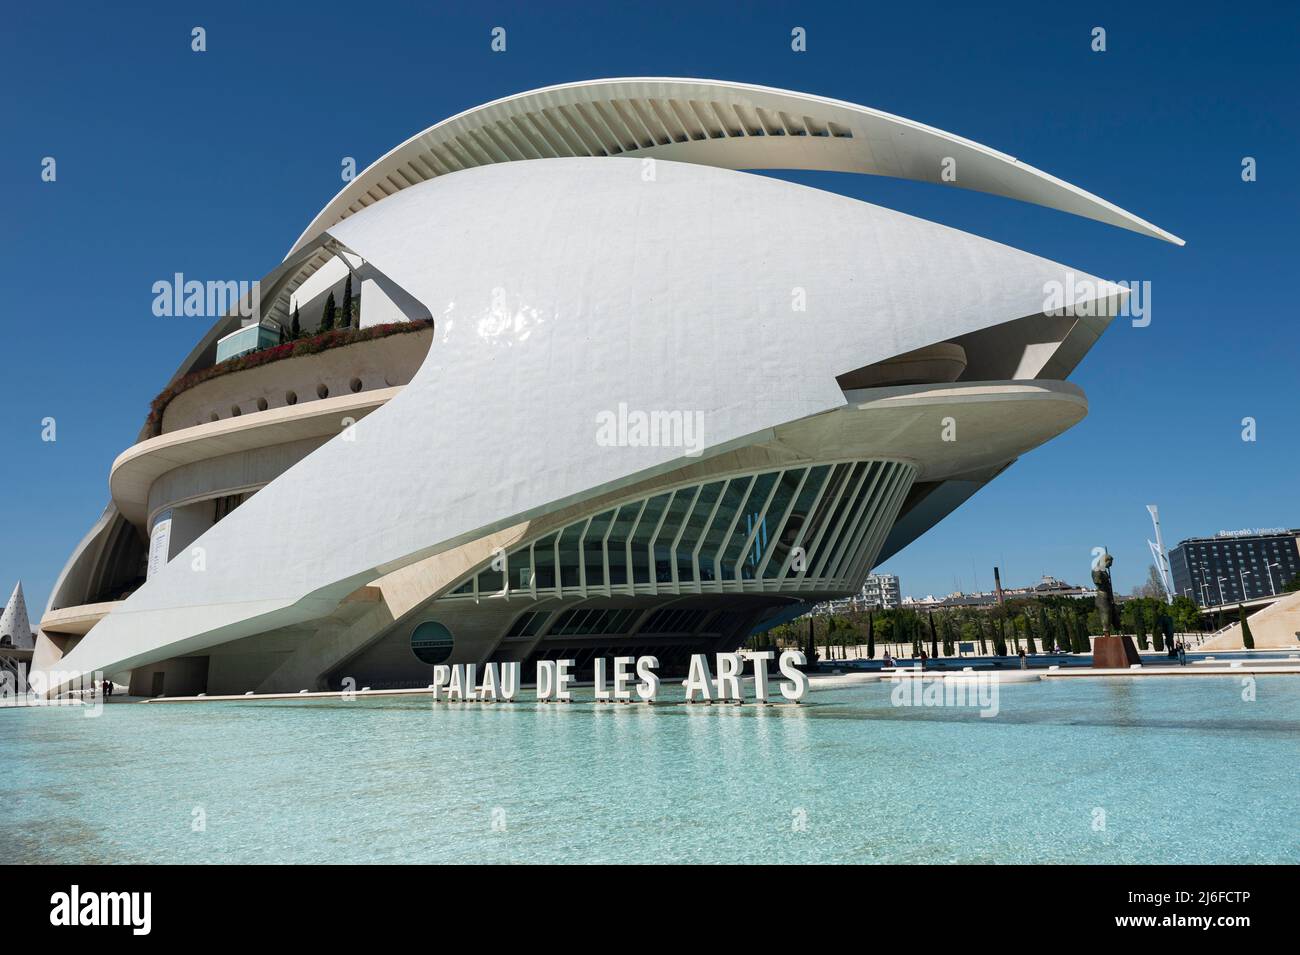 Architettura futurista: Teatro dell'Opera e centro culturale a Valencia, Spagna. Palau de les Arts Reina Sofia Foto Stock